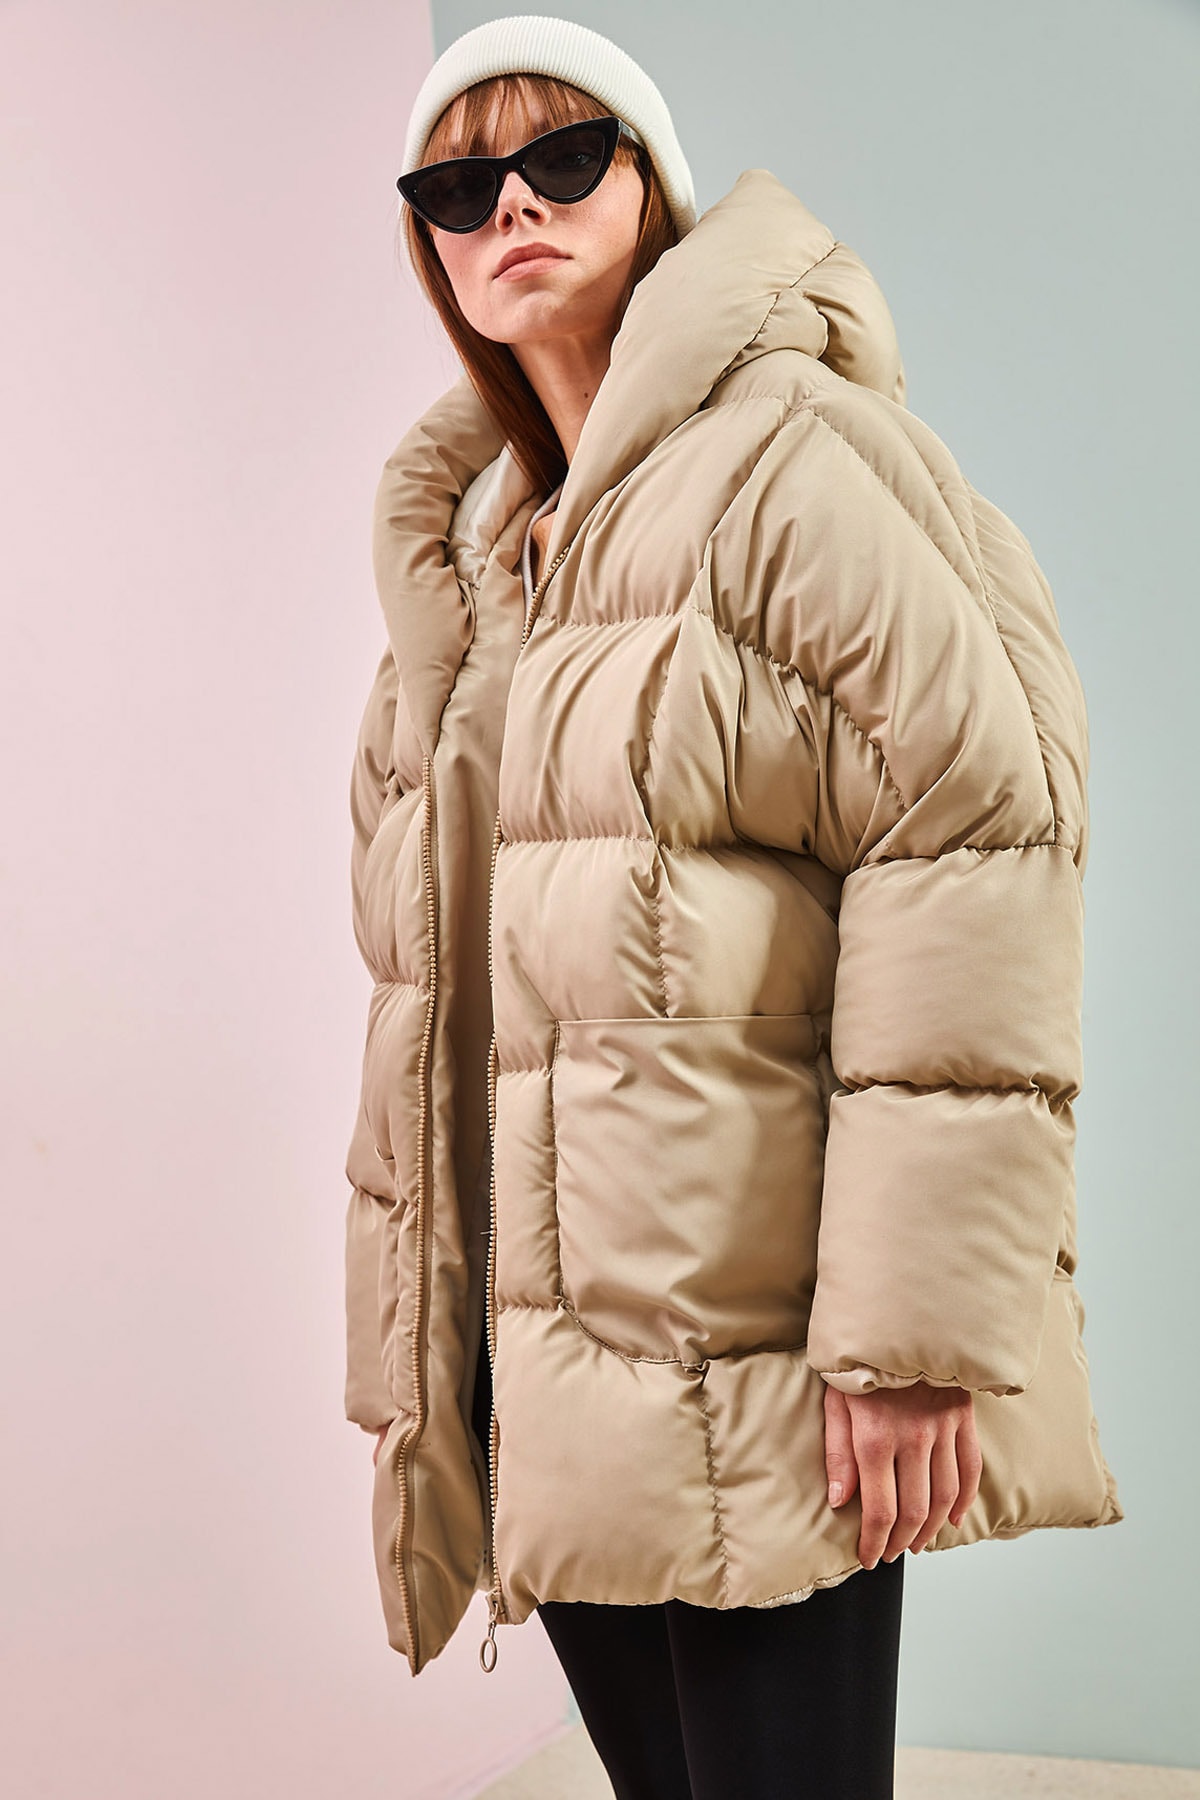 Bianco Lucci Dámsky béžový oversized nafúknutý kabát s veľkými dvojitými vreckami.